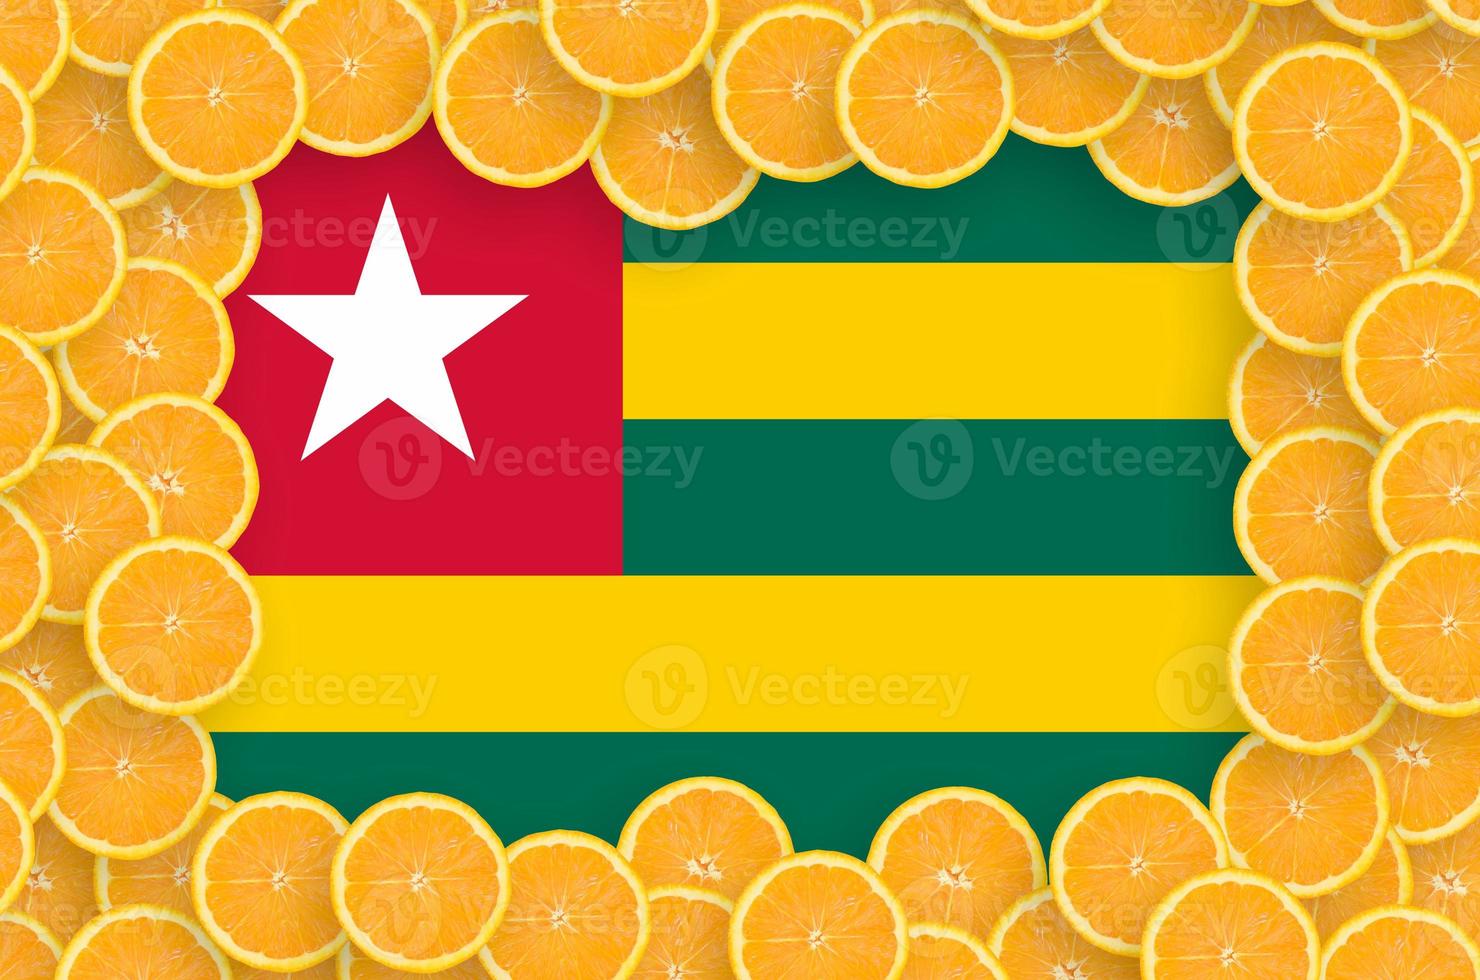 bandeira de togo no quadro de fatias de frutas cítricas frescas foto